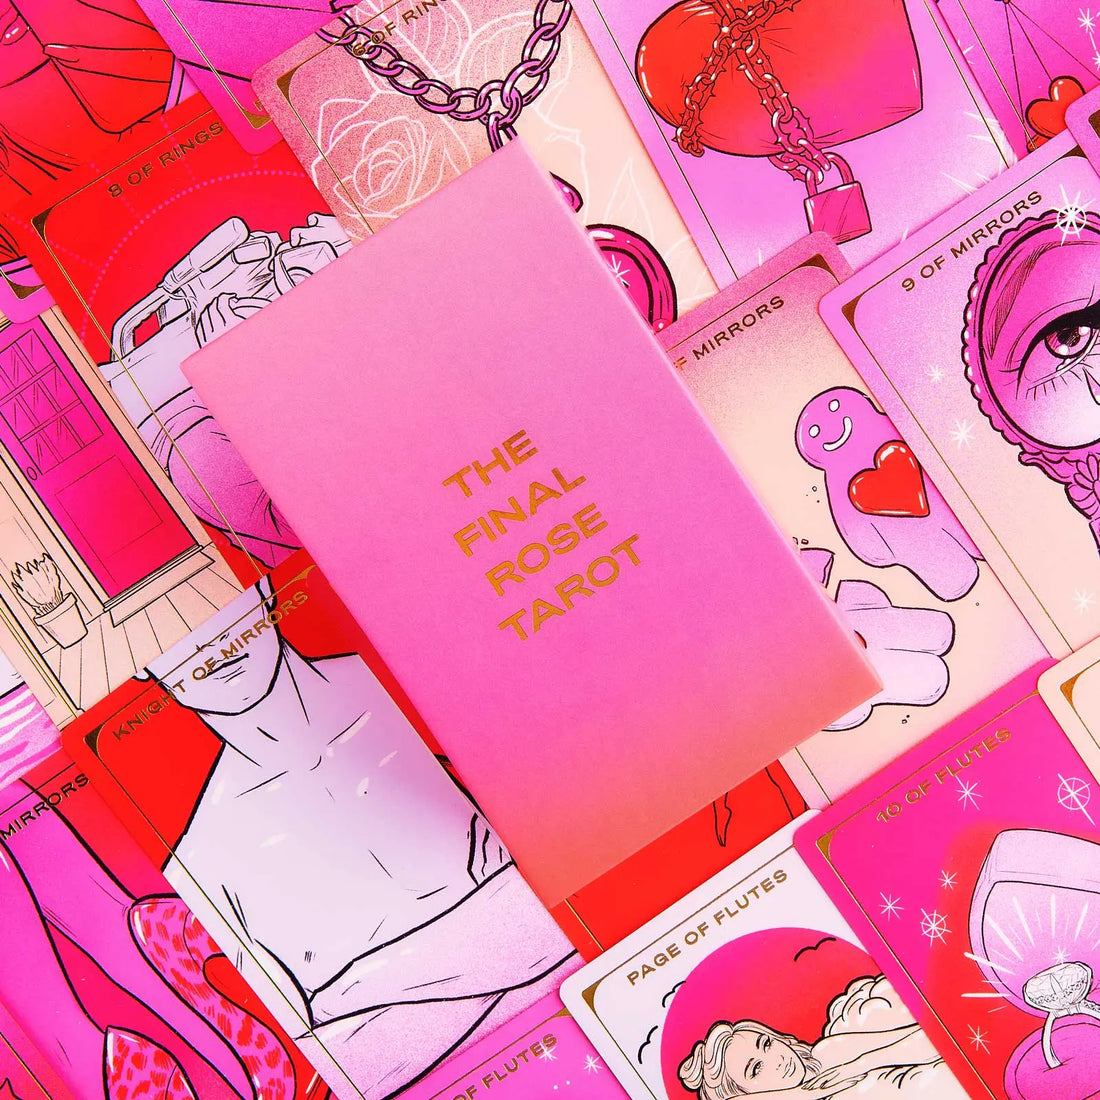 final rose tarot | pink tarot deck box and pink cards